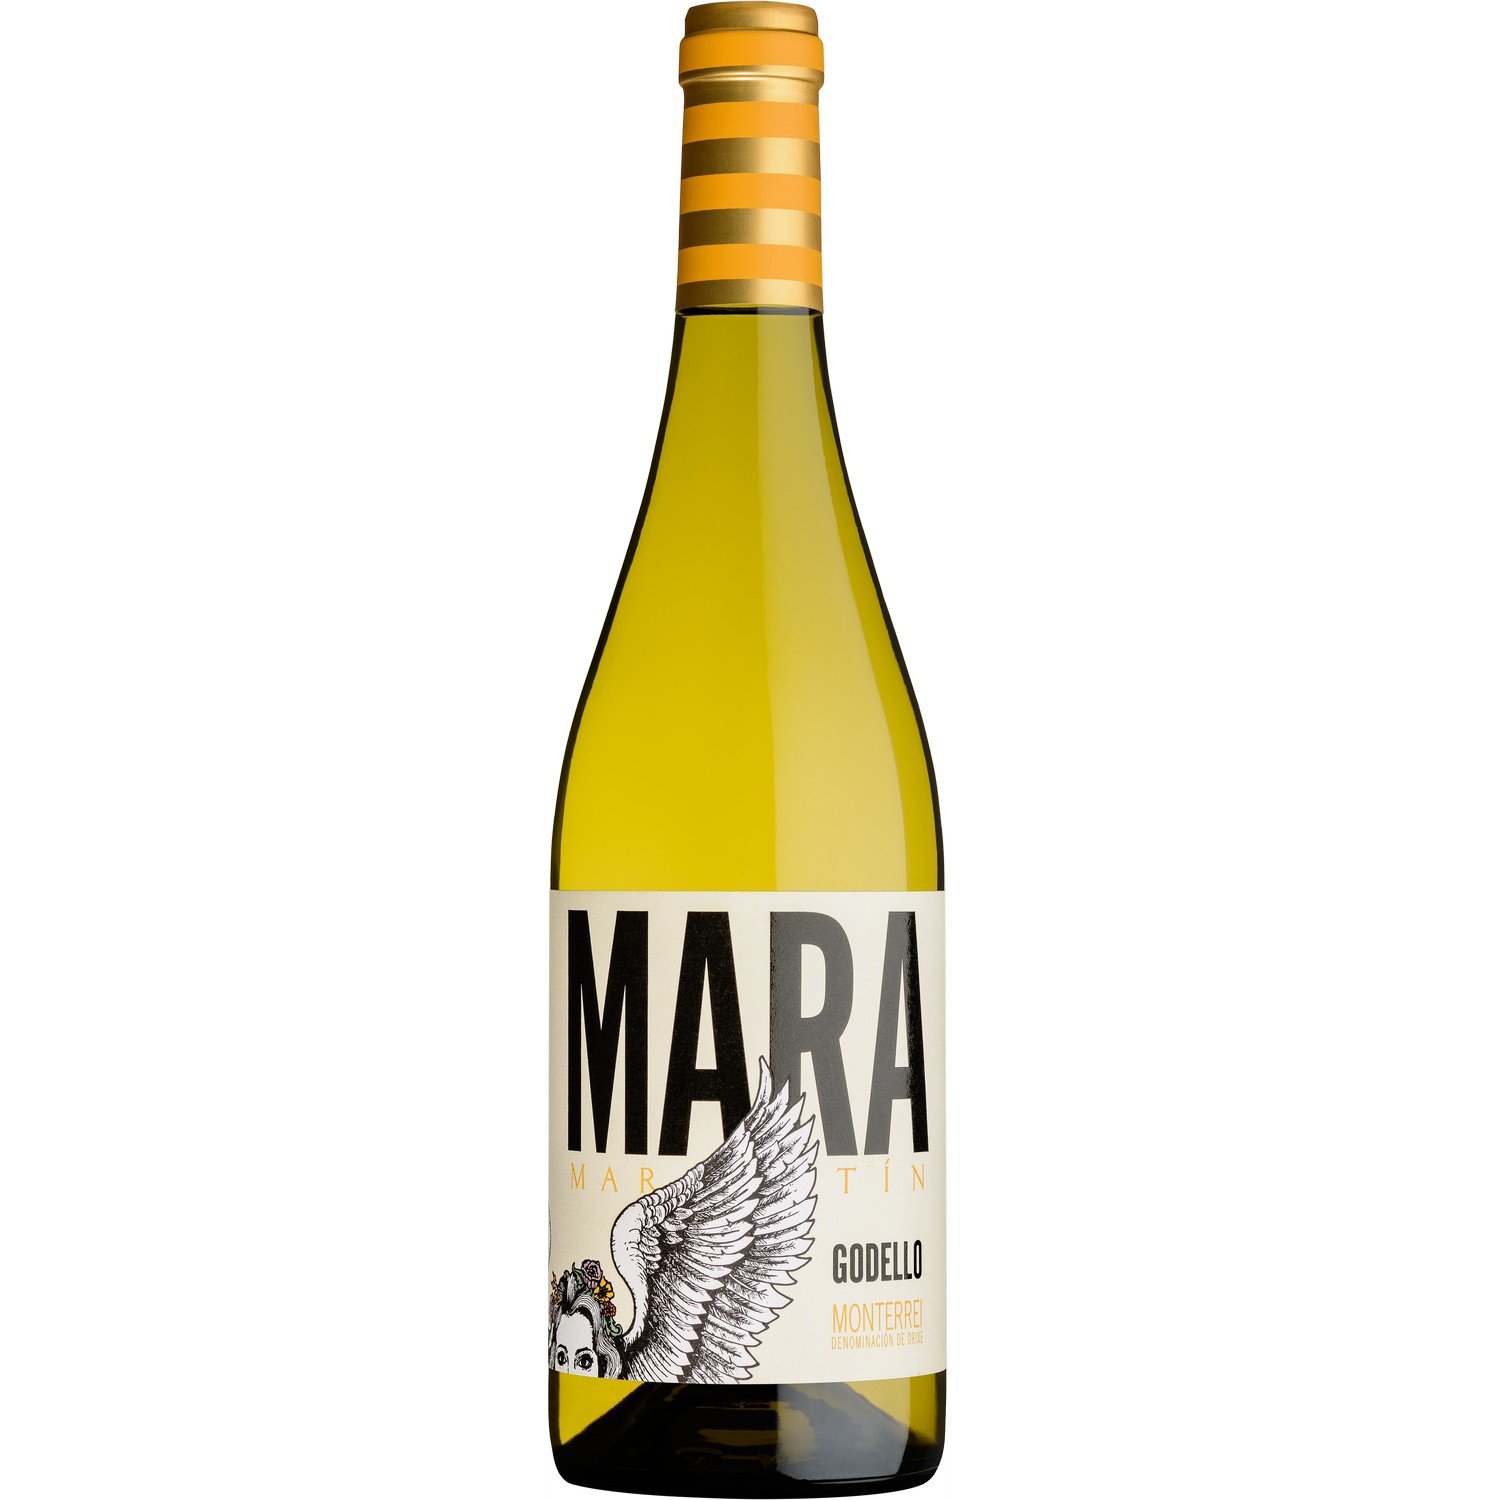 Вино Martin Codax Mara Martin Godello DO Monterrei, біле, сухе, 0,75 л - фото 1